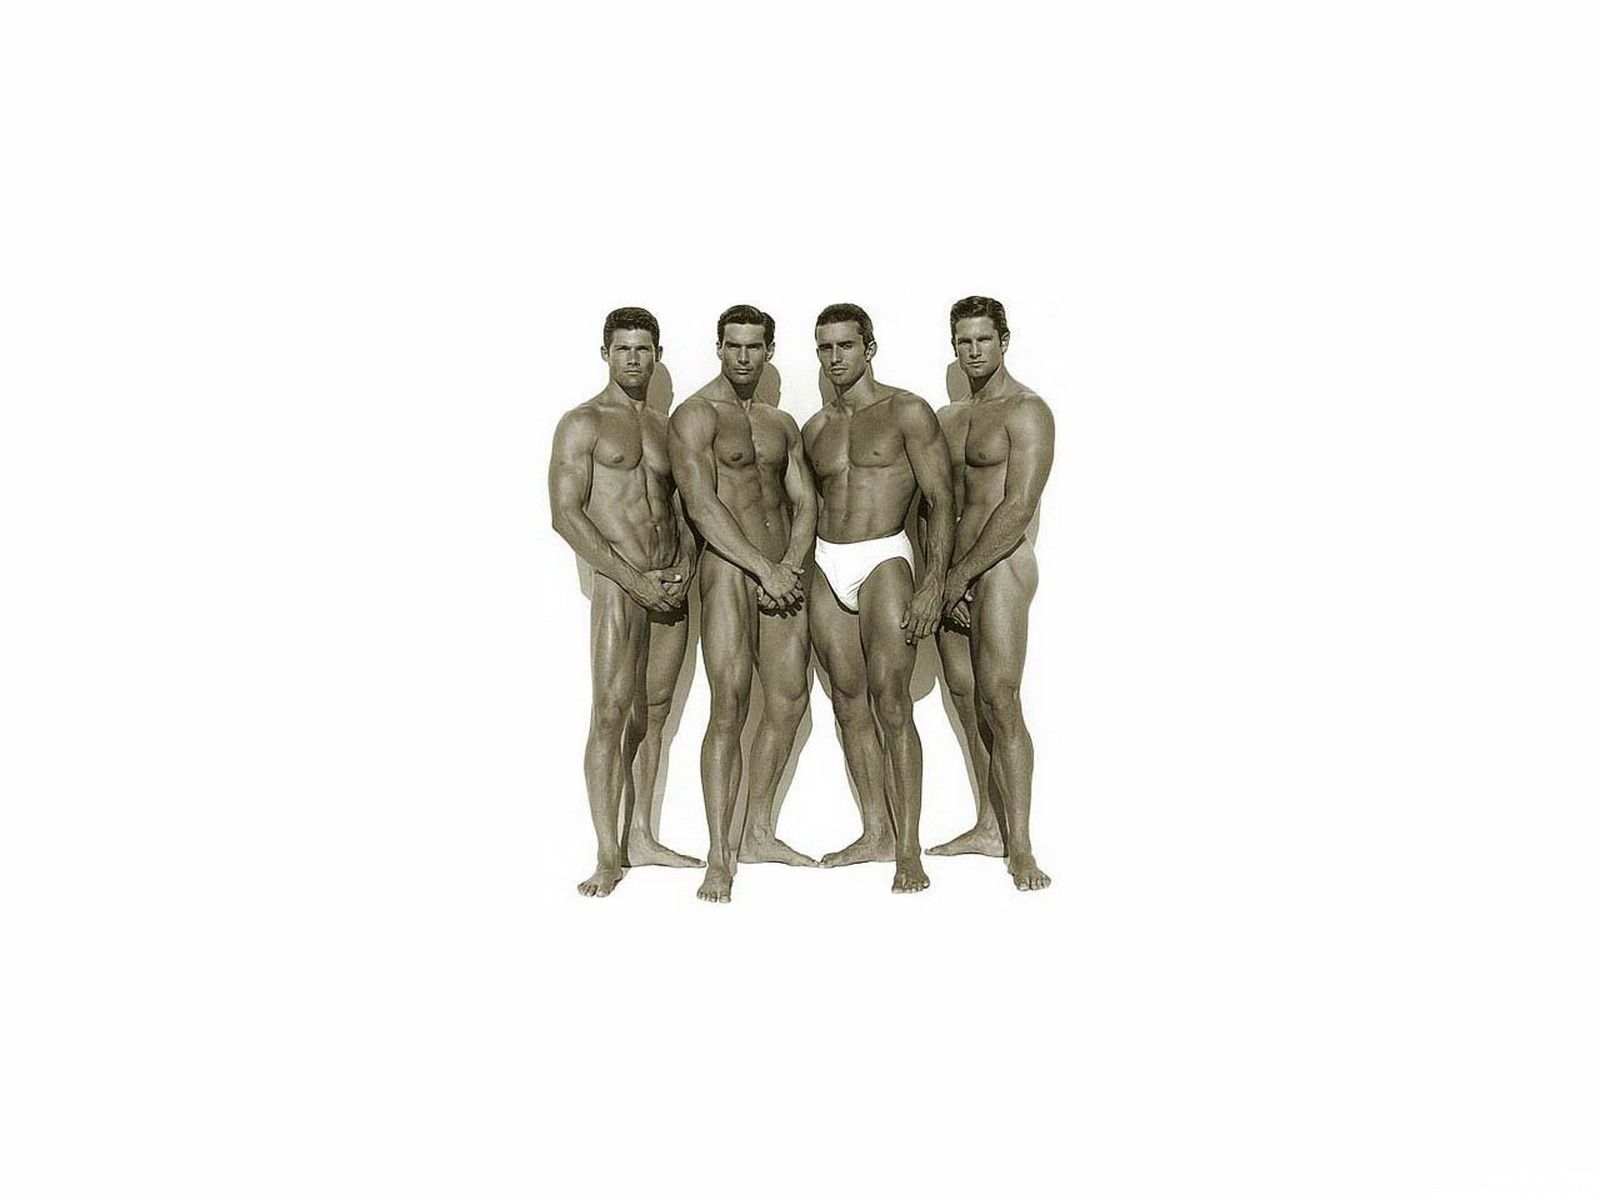 четыре голых мужчины прикрывают срам ладонями, фото красивого мужчины